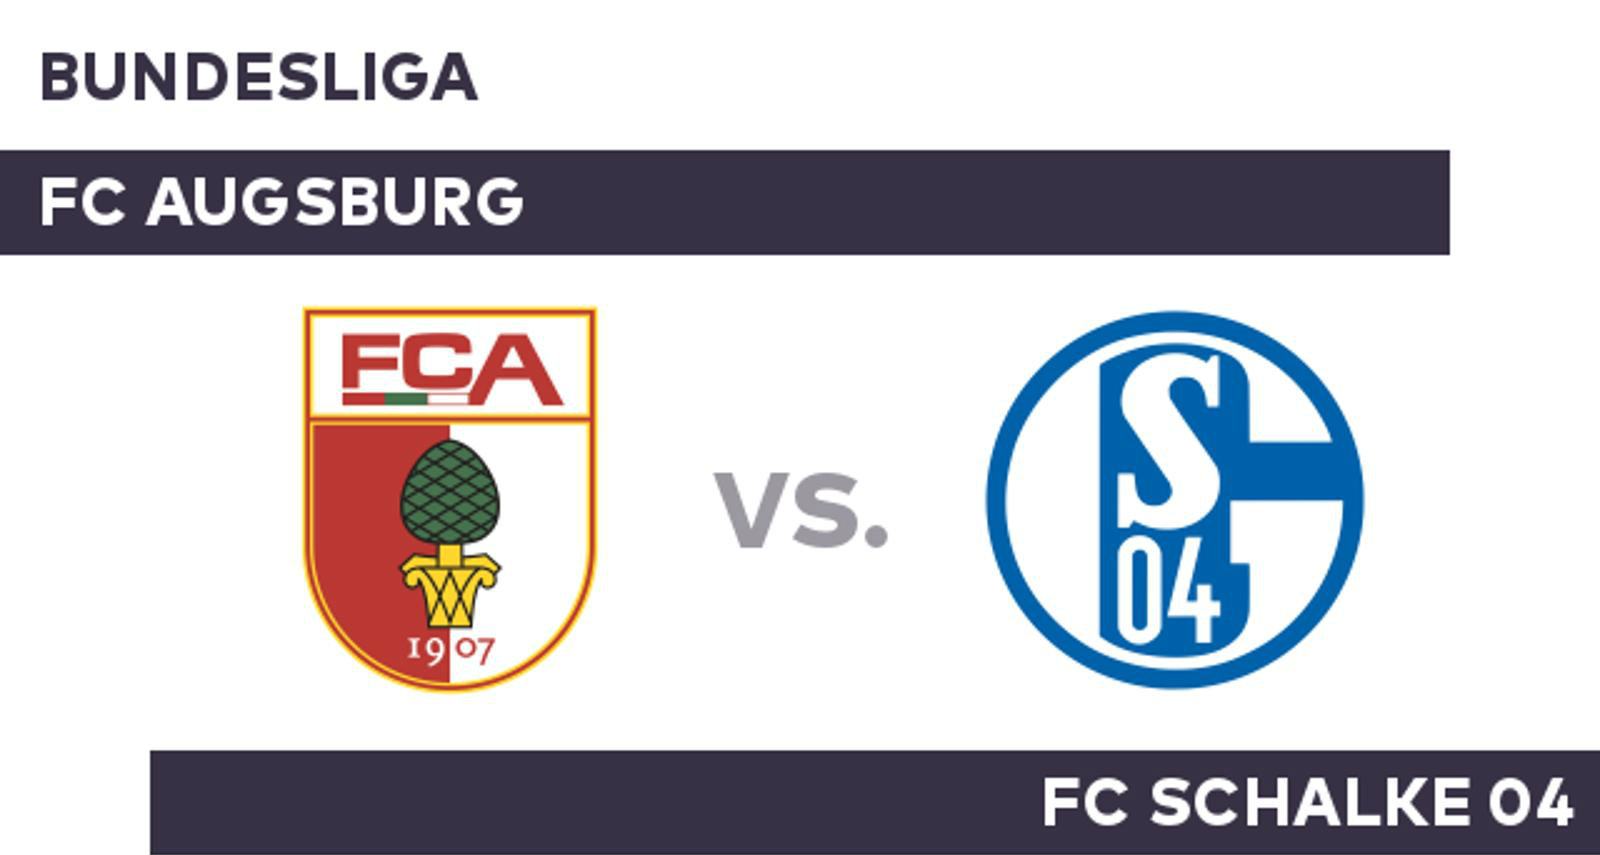 Nhận định kèo Tài Xỉu trận đấu Augsburg vs Schalke 04 ngày 15/12 1